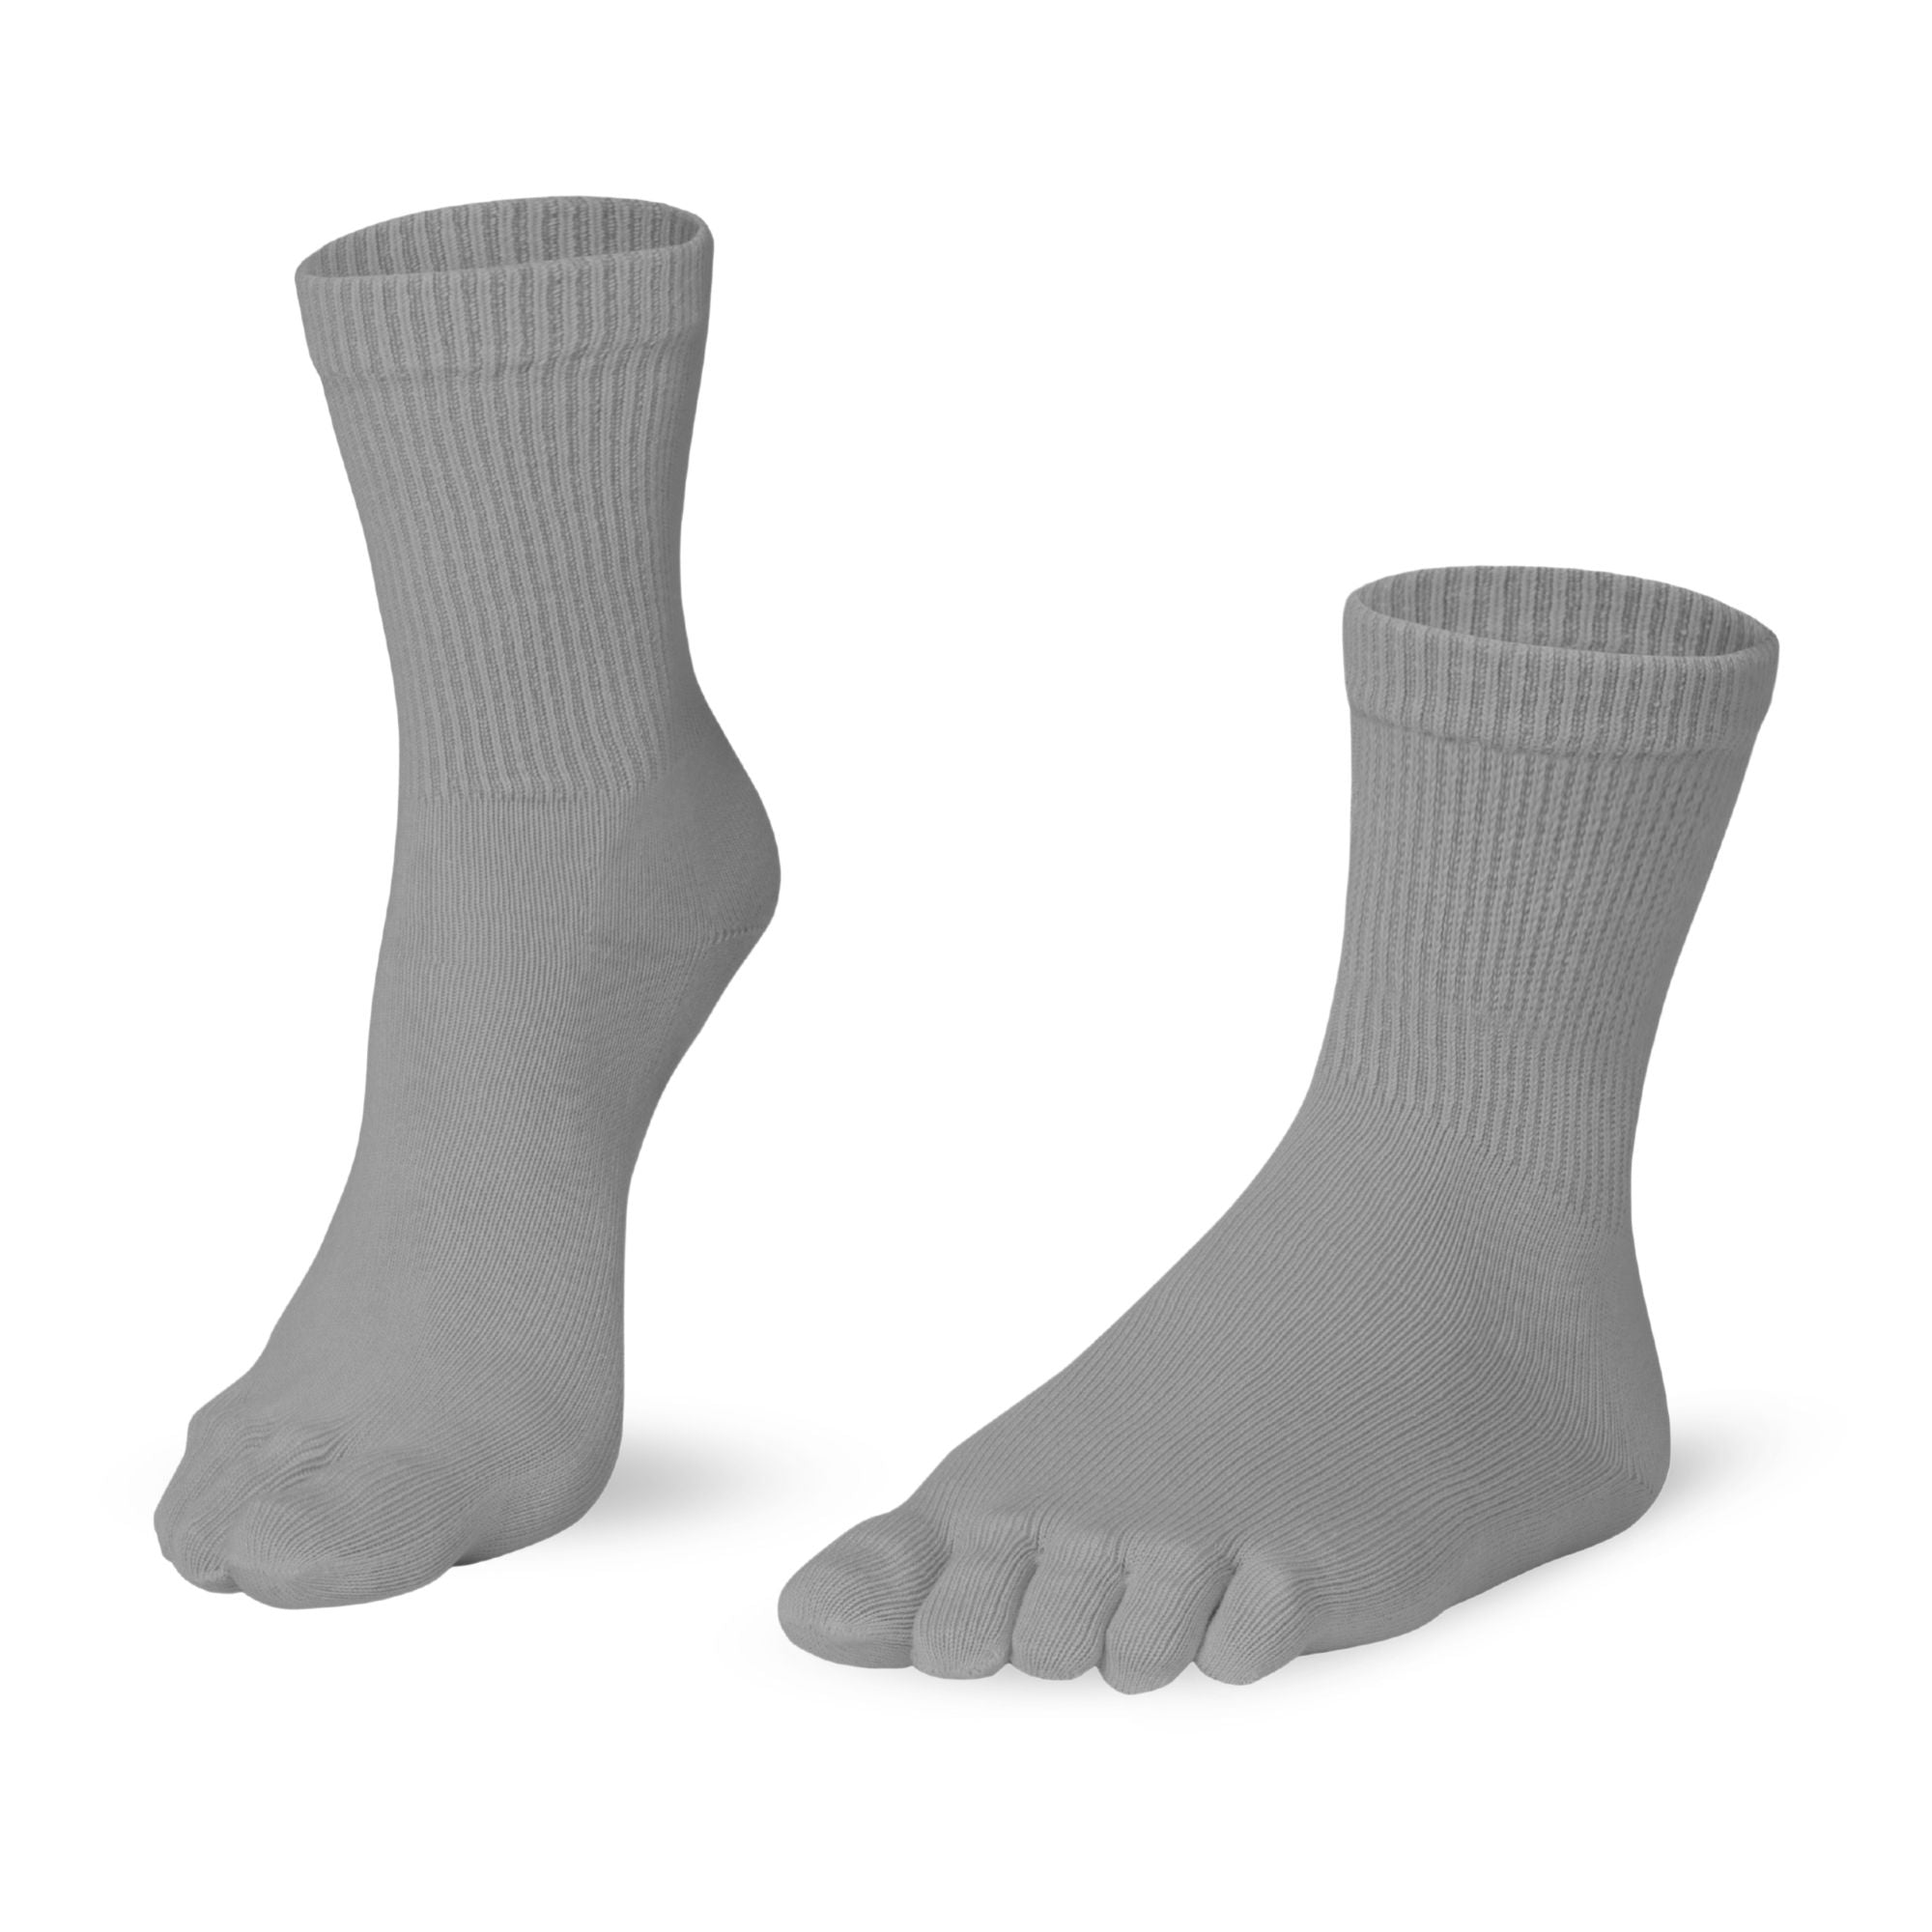 Knitido Essentials Relax calf length comfort toe socks, color gray